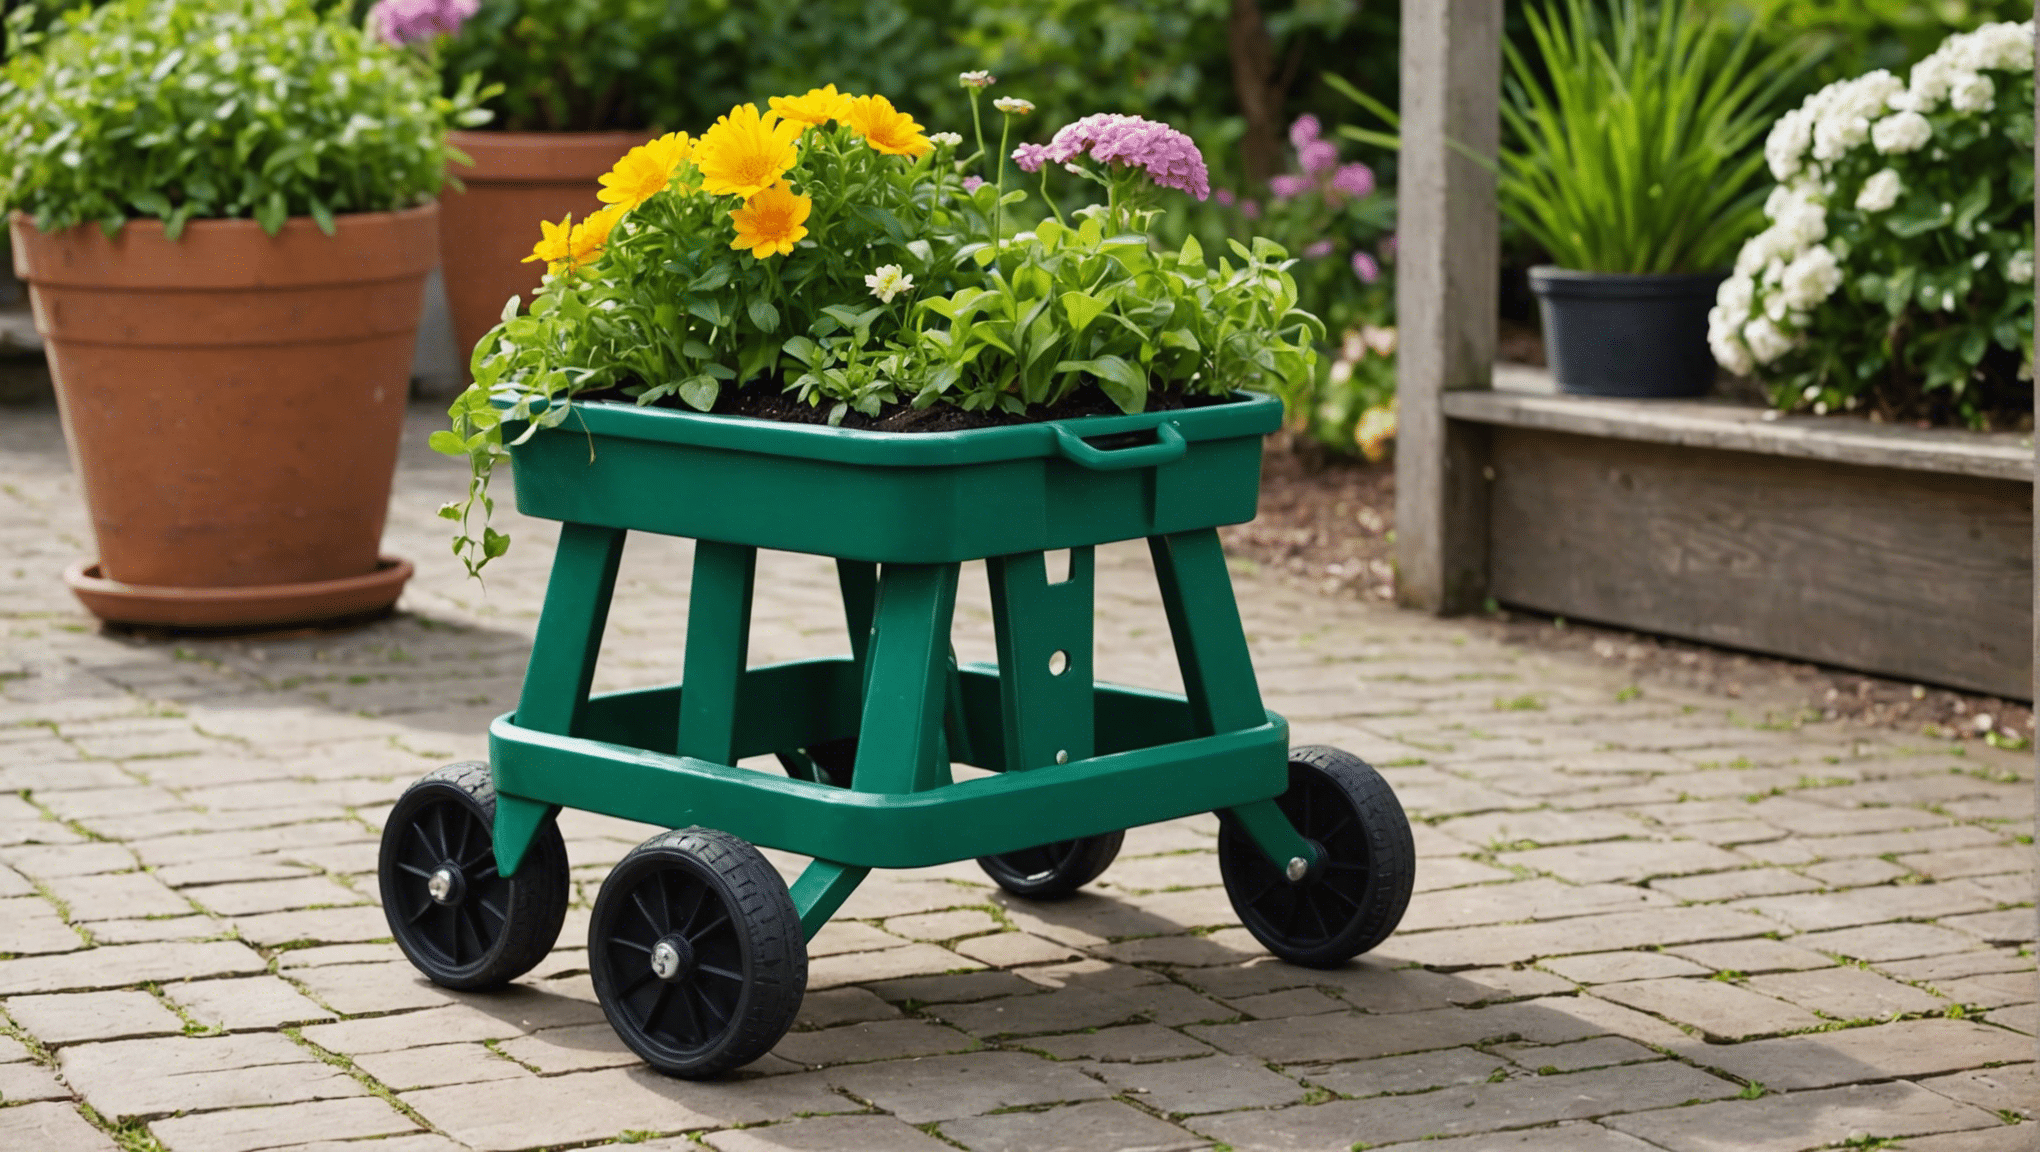 descubra os benefícios dos bancos de jardinagem com rodas e descubra se valem a pena investir para as suas necessidades de jardinagem.